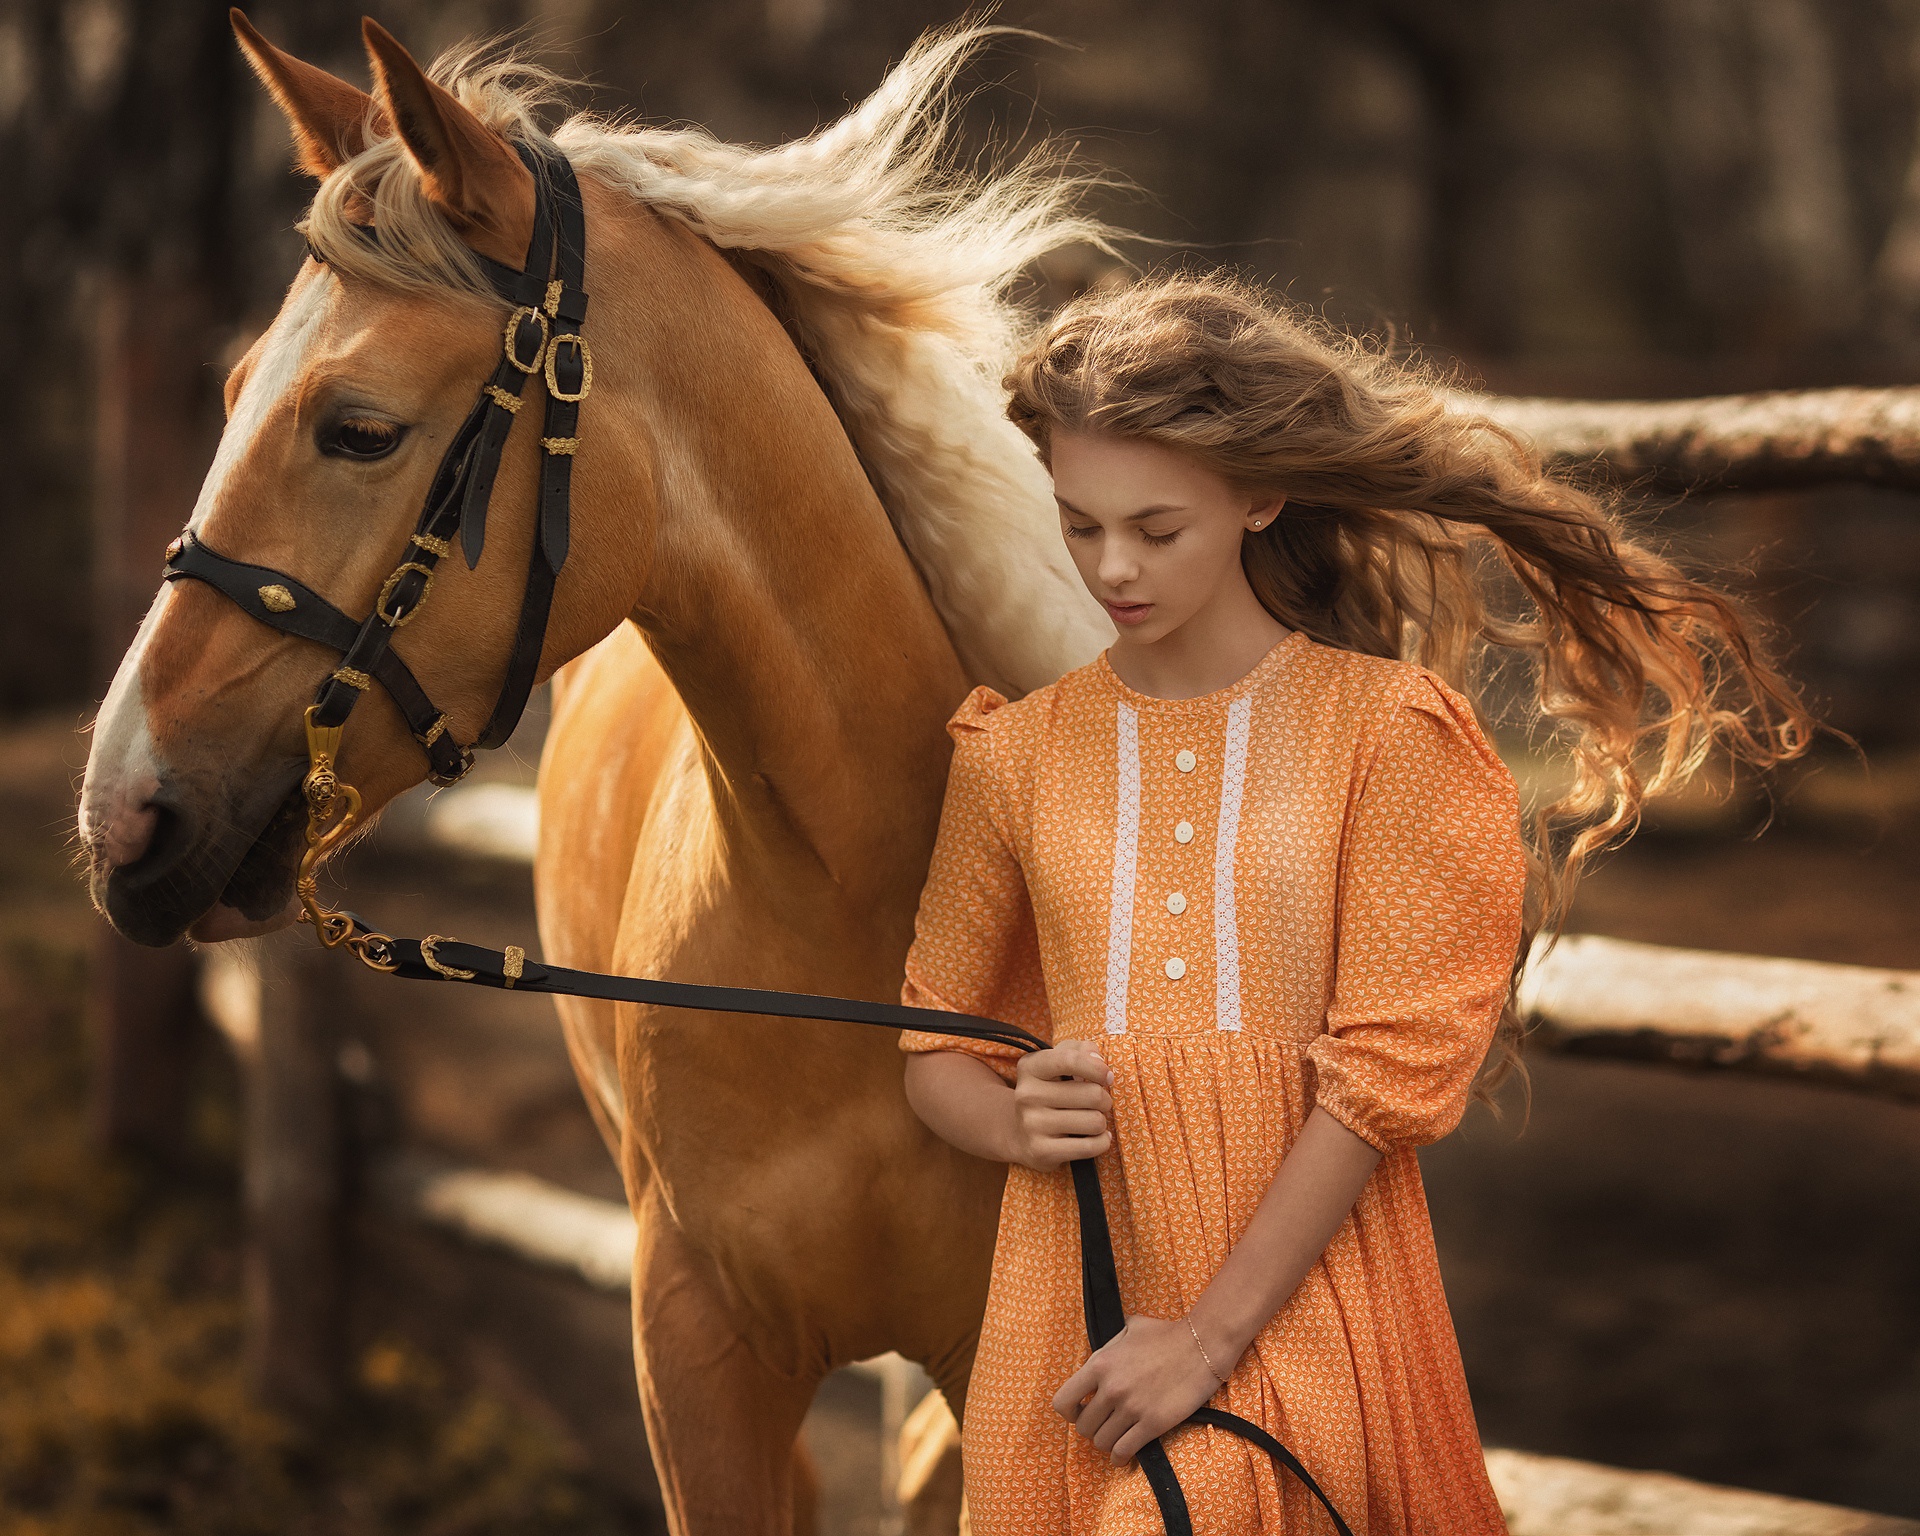 Девочка с лошадкой. Фотосессия с лошадьми. Девушка с лошадью. Девушка на коне. Фотосессия с лошадью в платье.